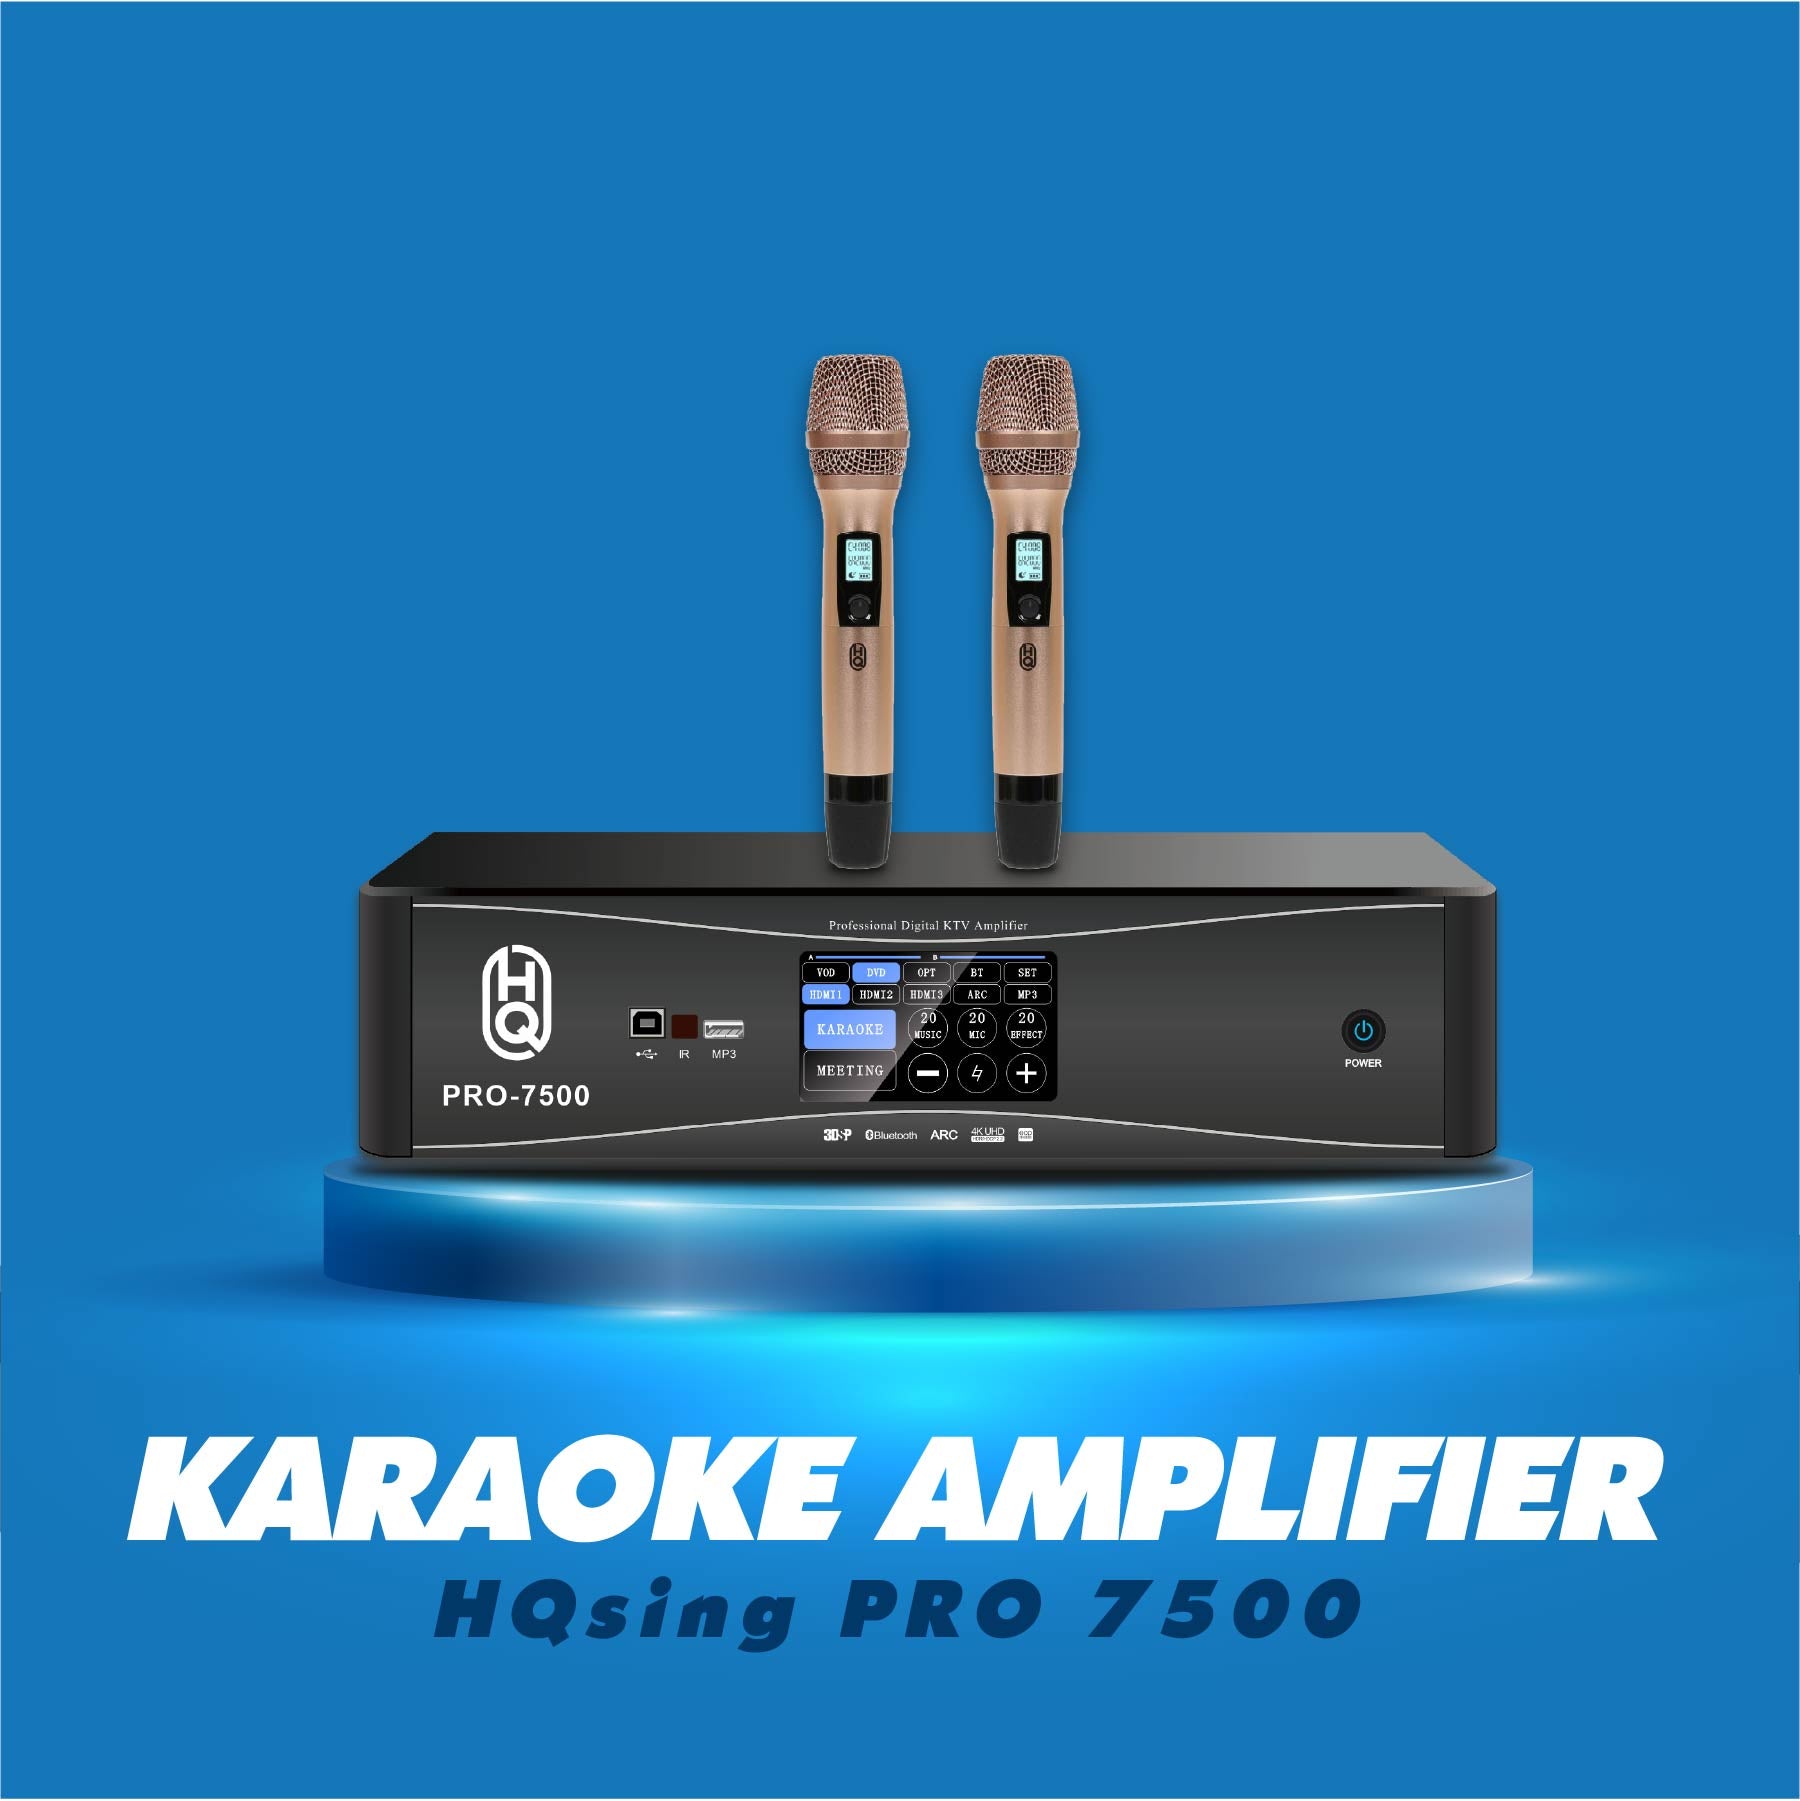 Karaoke Amplifier 3 in 1 PRO-7500